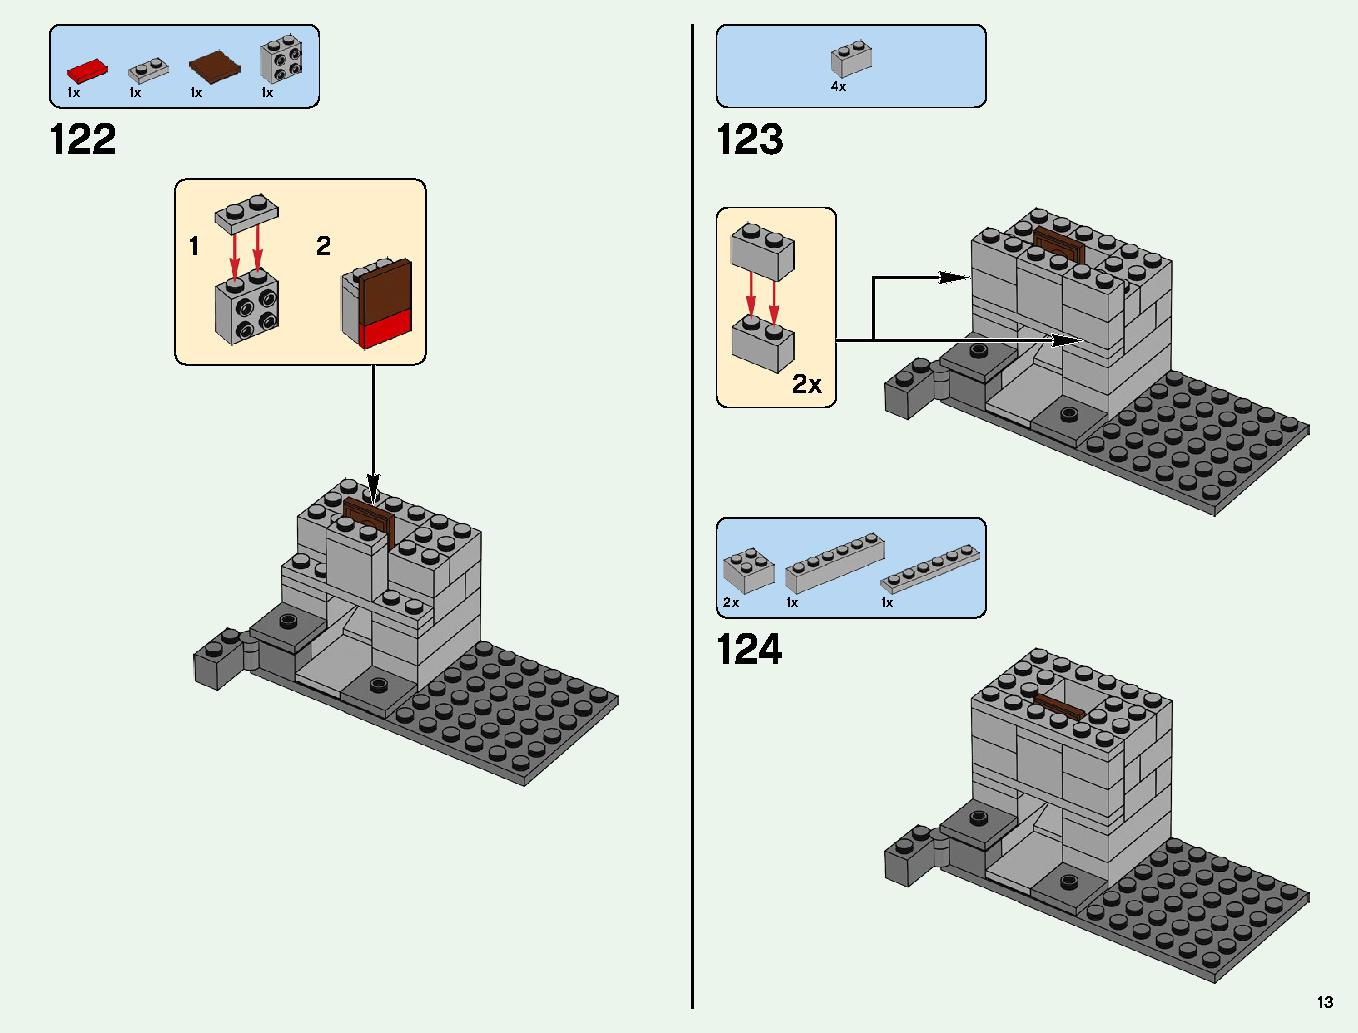 ベッドロックの冒険 21147 レゴの商品情報 レゴの説明書・組立方法 13 page